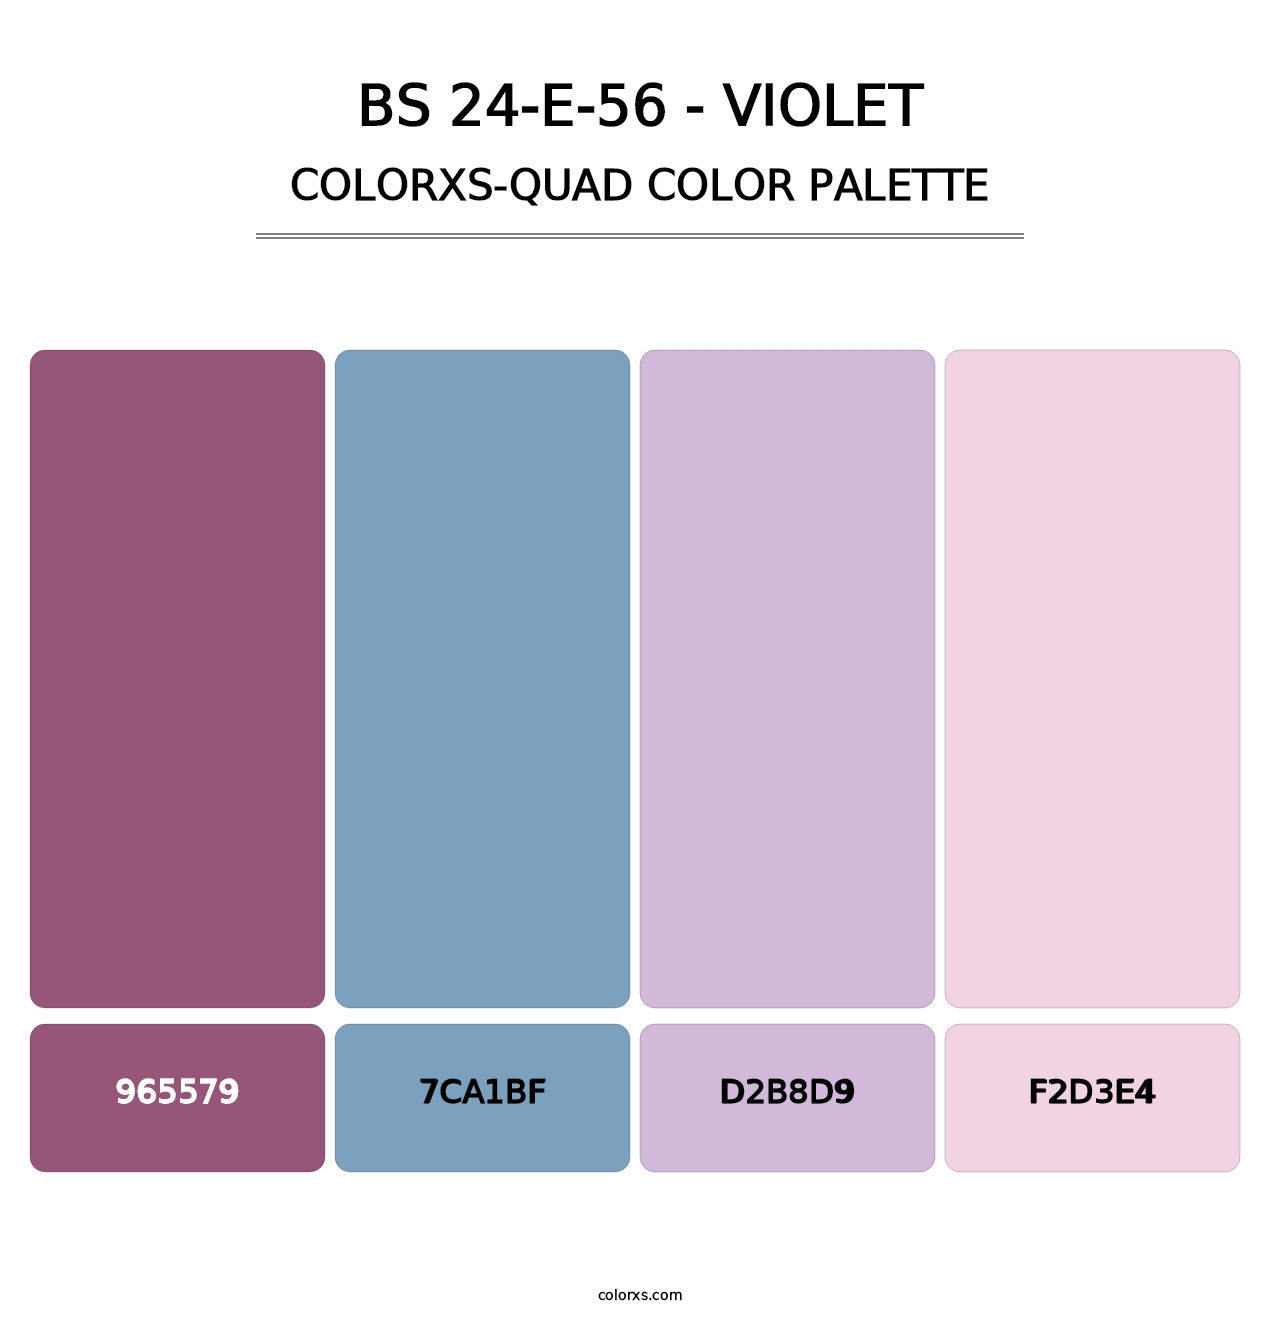 BS 24-E-56 - Violet - Colorxs Quad Palette